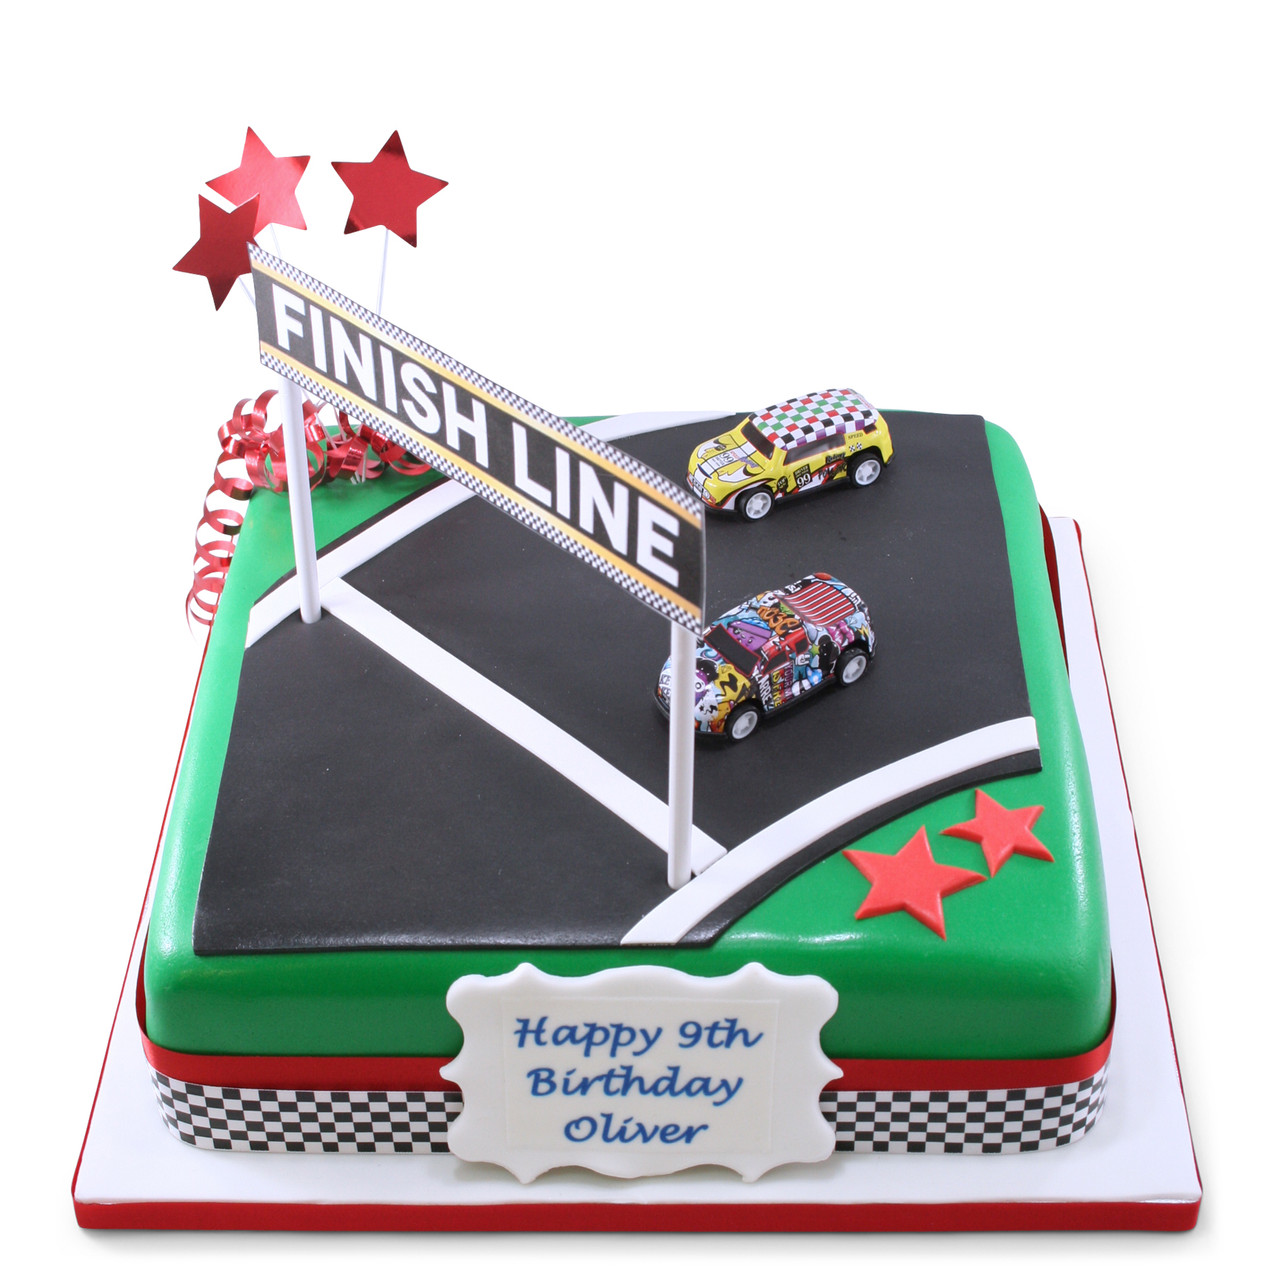 Number 4 race track cake - Decorated Cake by Yezidid - CakesDecor